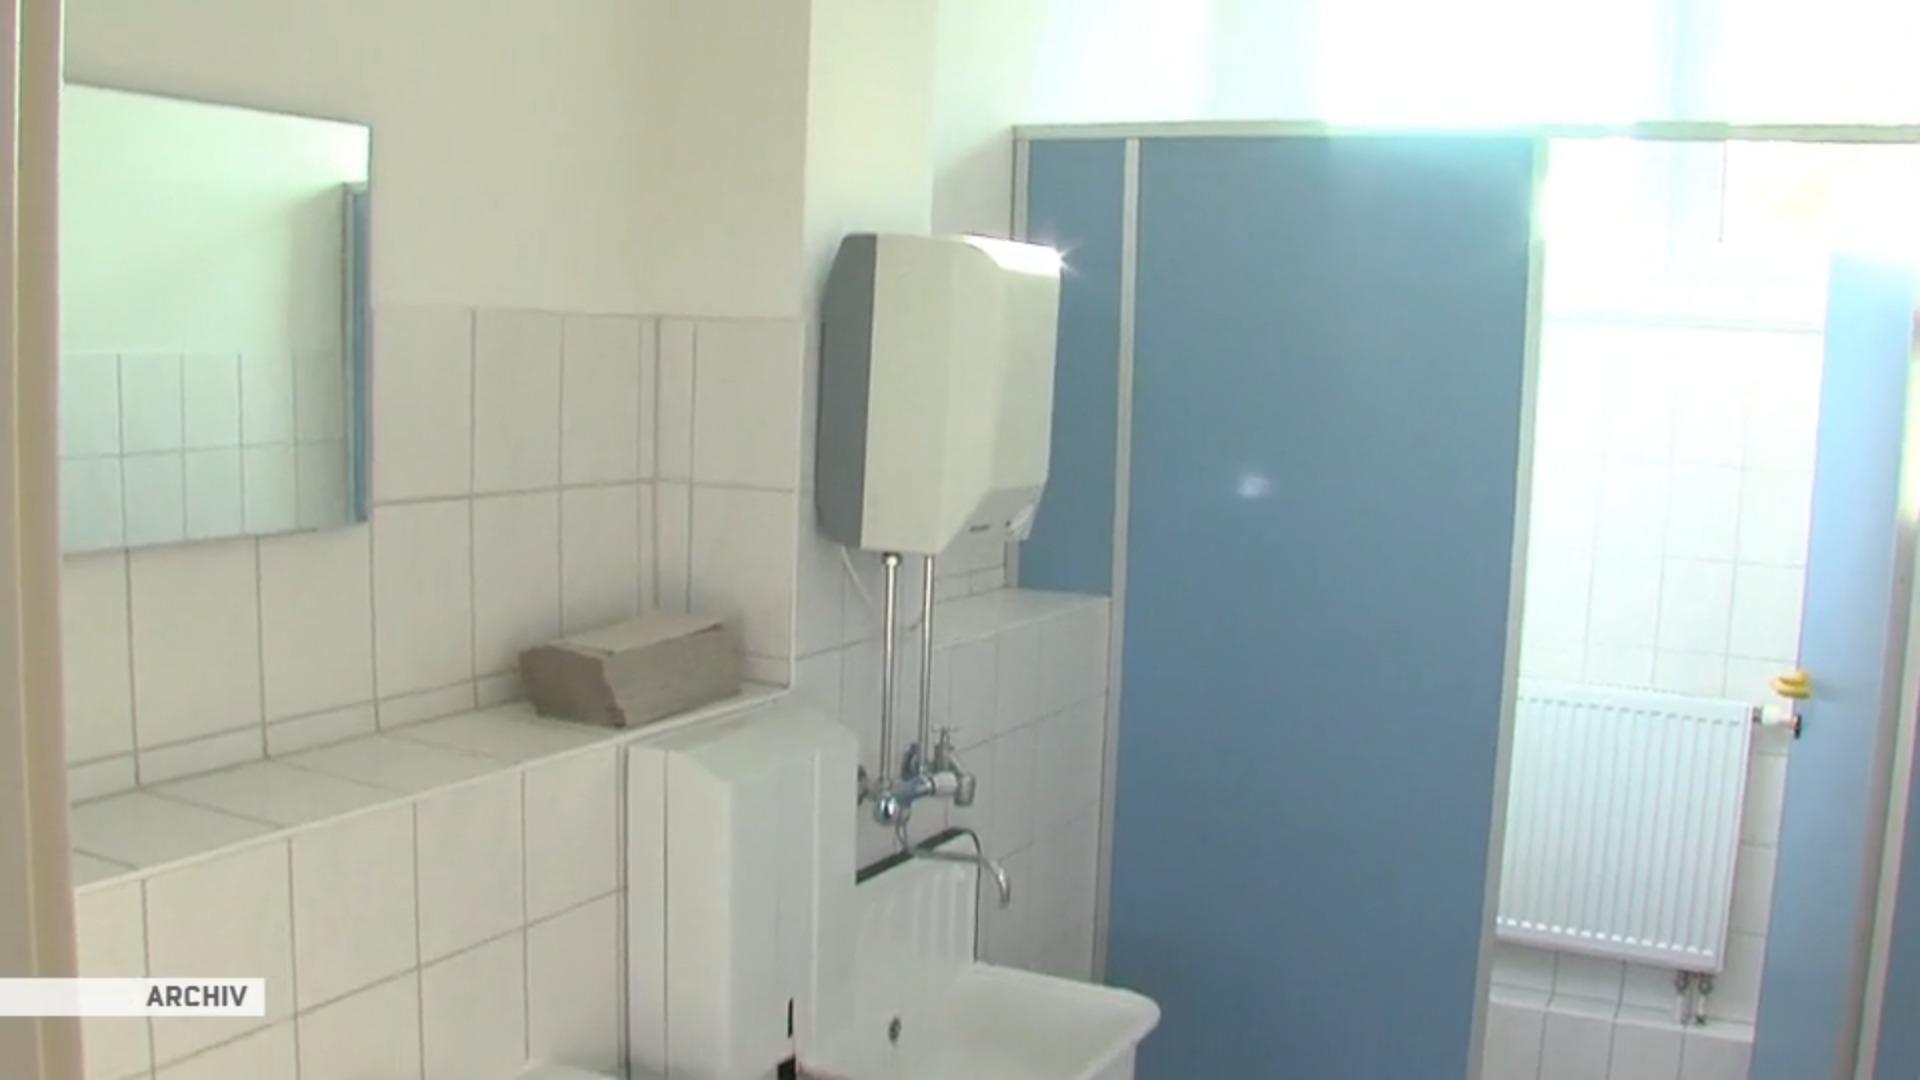 Kosten für Schulklos in Essen explodieren Teure Toiletten